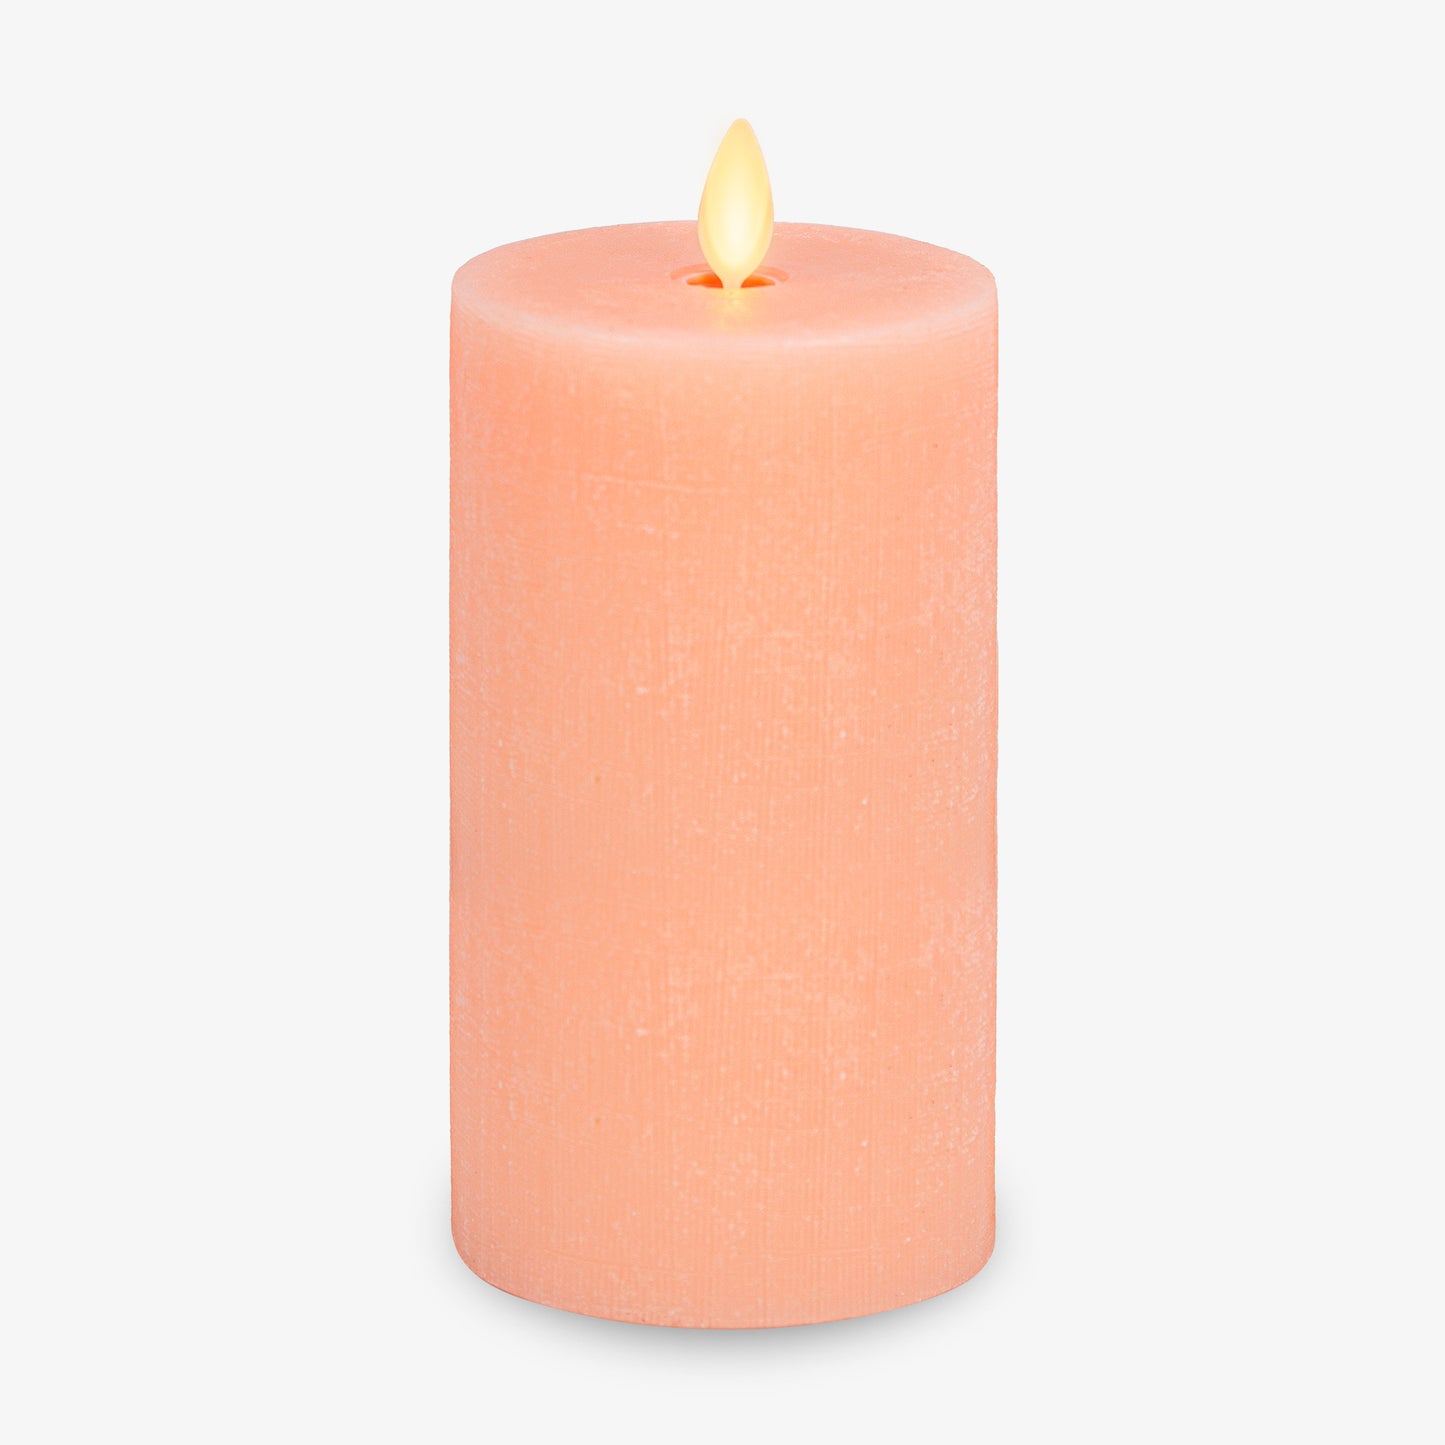 Chalky Linen Mellow Peach Flameless Candle Pillar